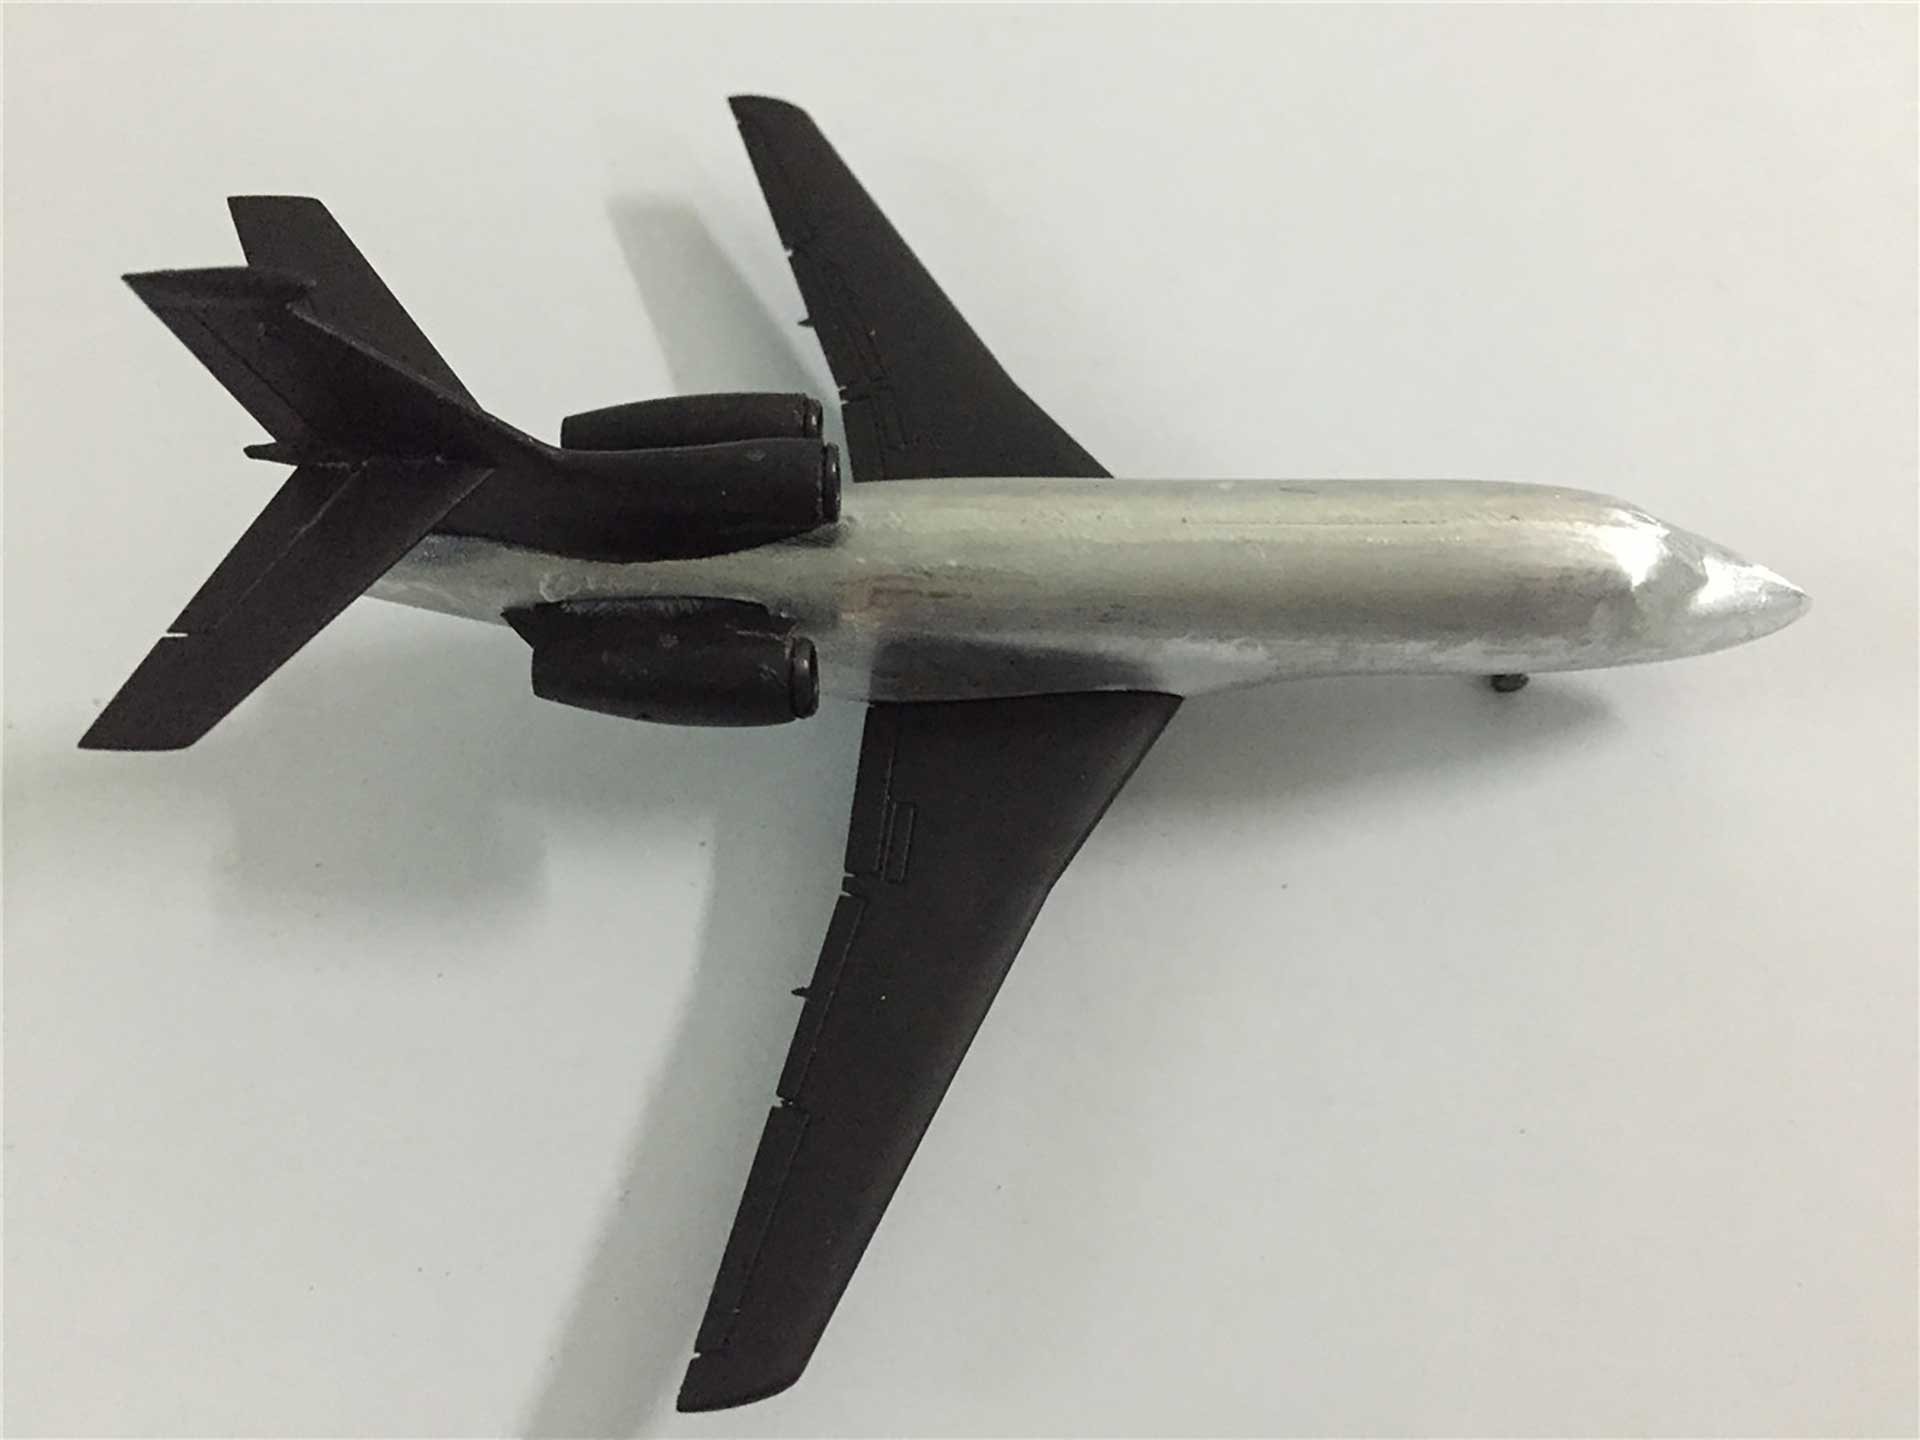 Falcon Response Dassault Aviation maquette